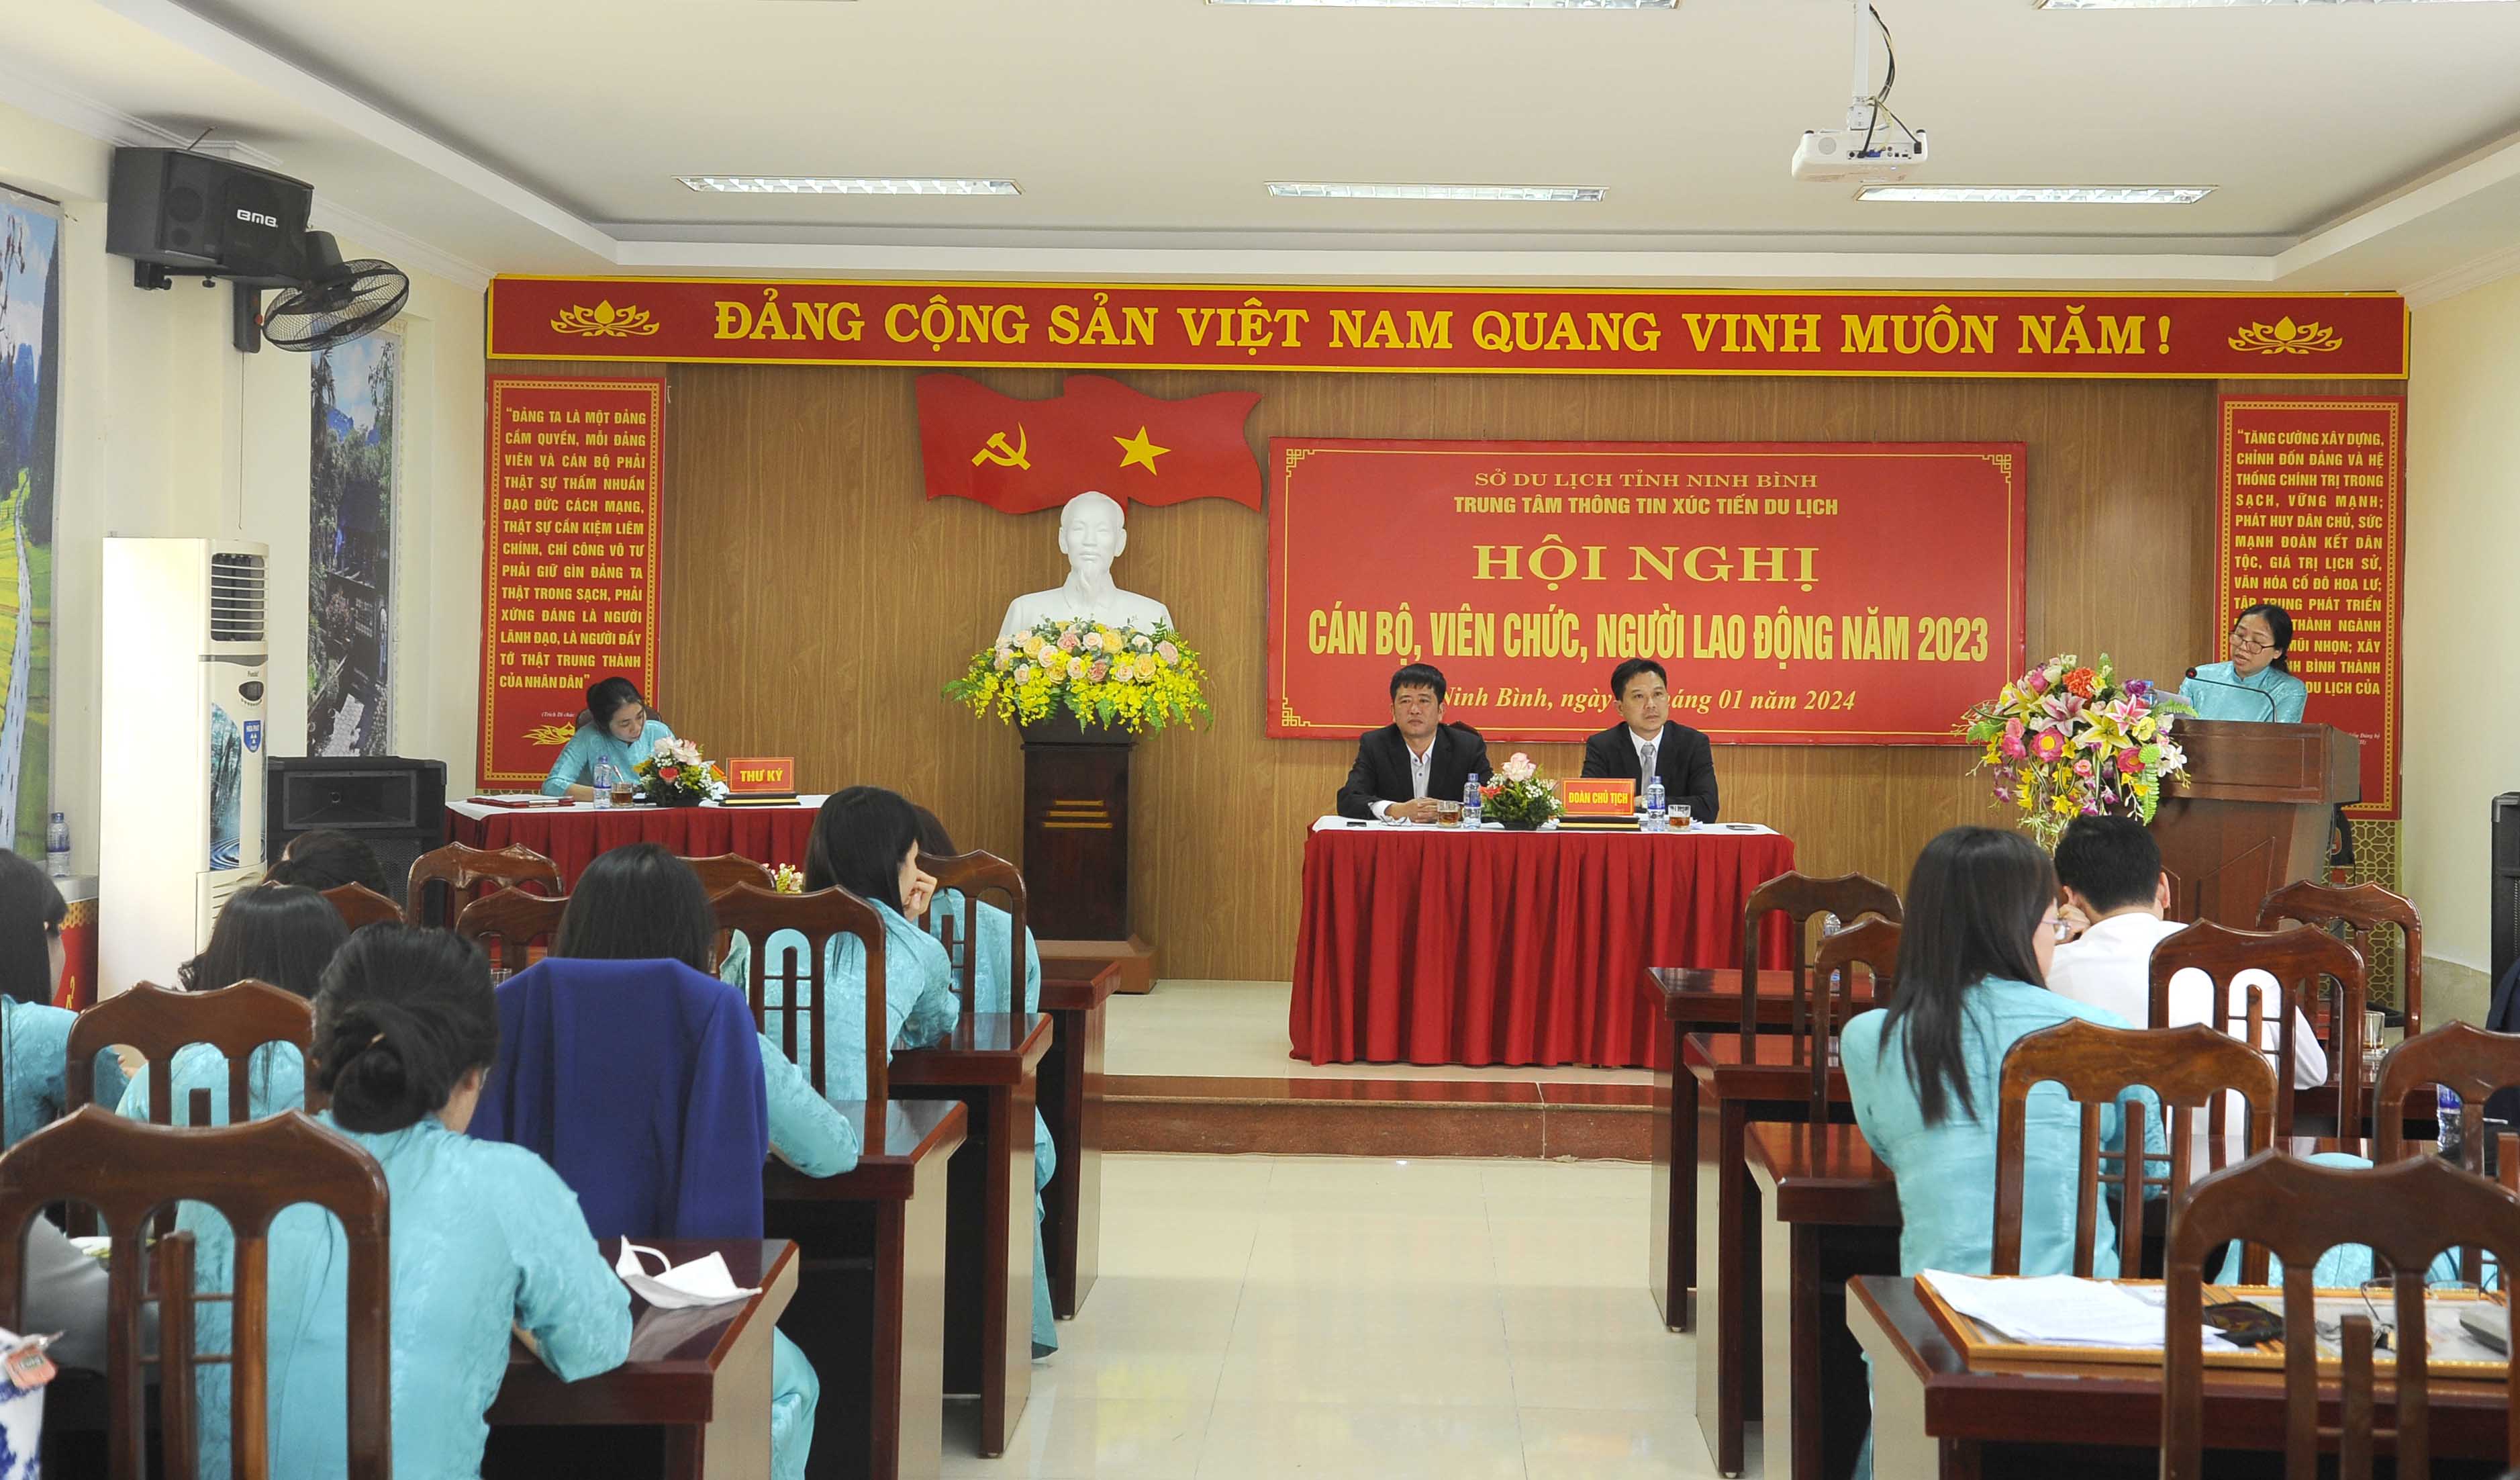 Hội nghị Cán bộ, Viên chức, Người lao động Trung tâm Thông tin Xúc tiến Du lịch Ninh Bình năm 2023 